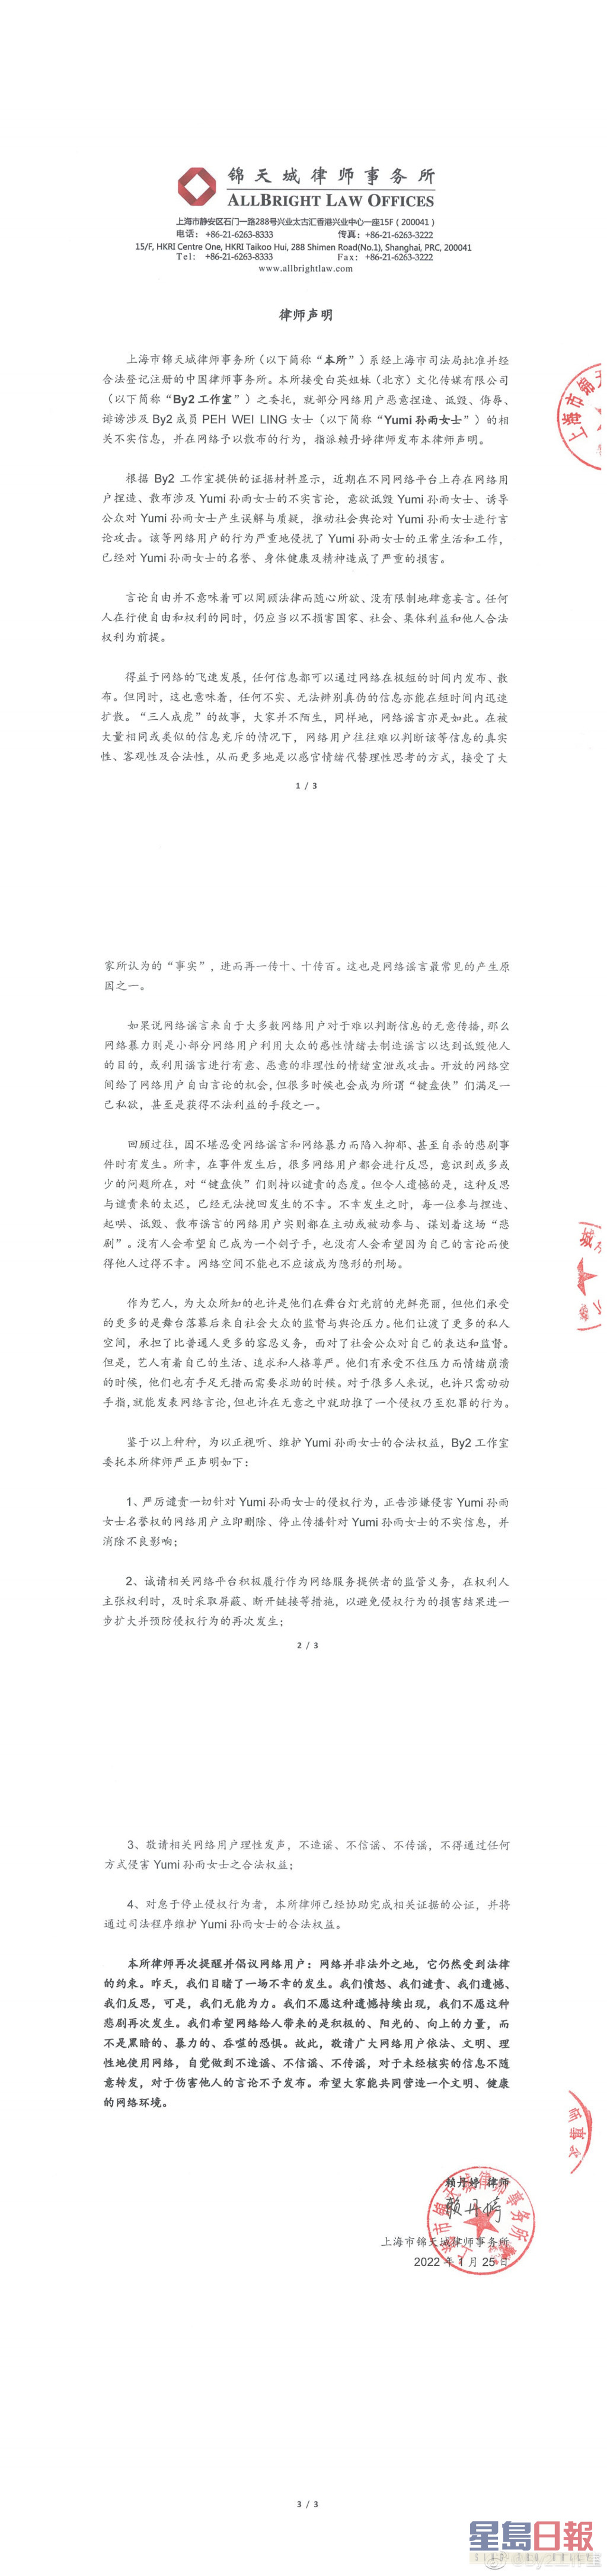 不过，律师声明并未针对李靓蕾，而是针对涉嫌侵害Yumi名誉的网路用户。